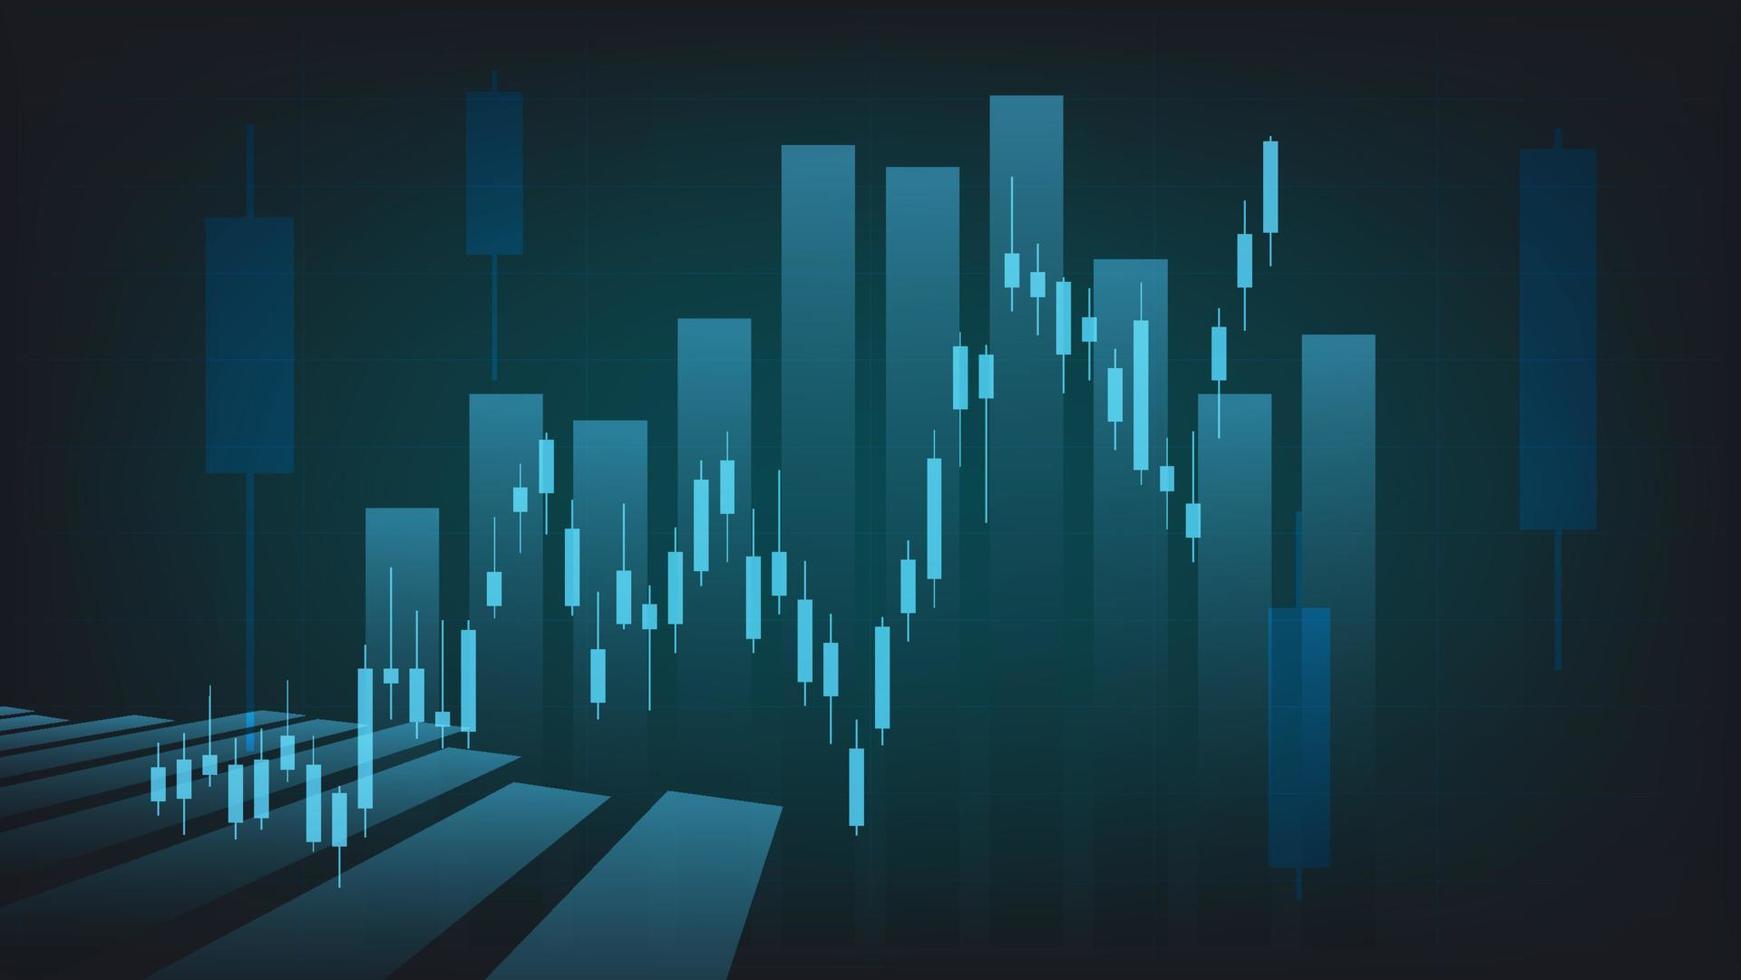 las estadísticas de negocios financieros con gráfico de barras y gráfico de velas muestran el precio del mercado de valores y el cambio de divisas en un fondo verde oscuro vector